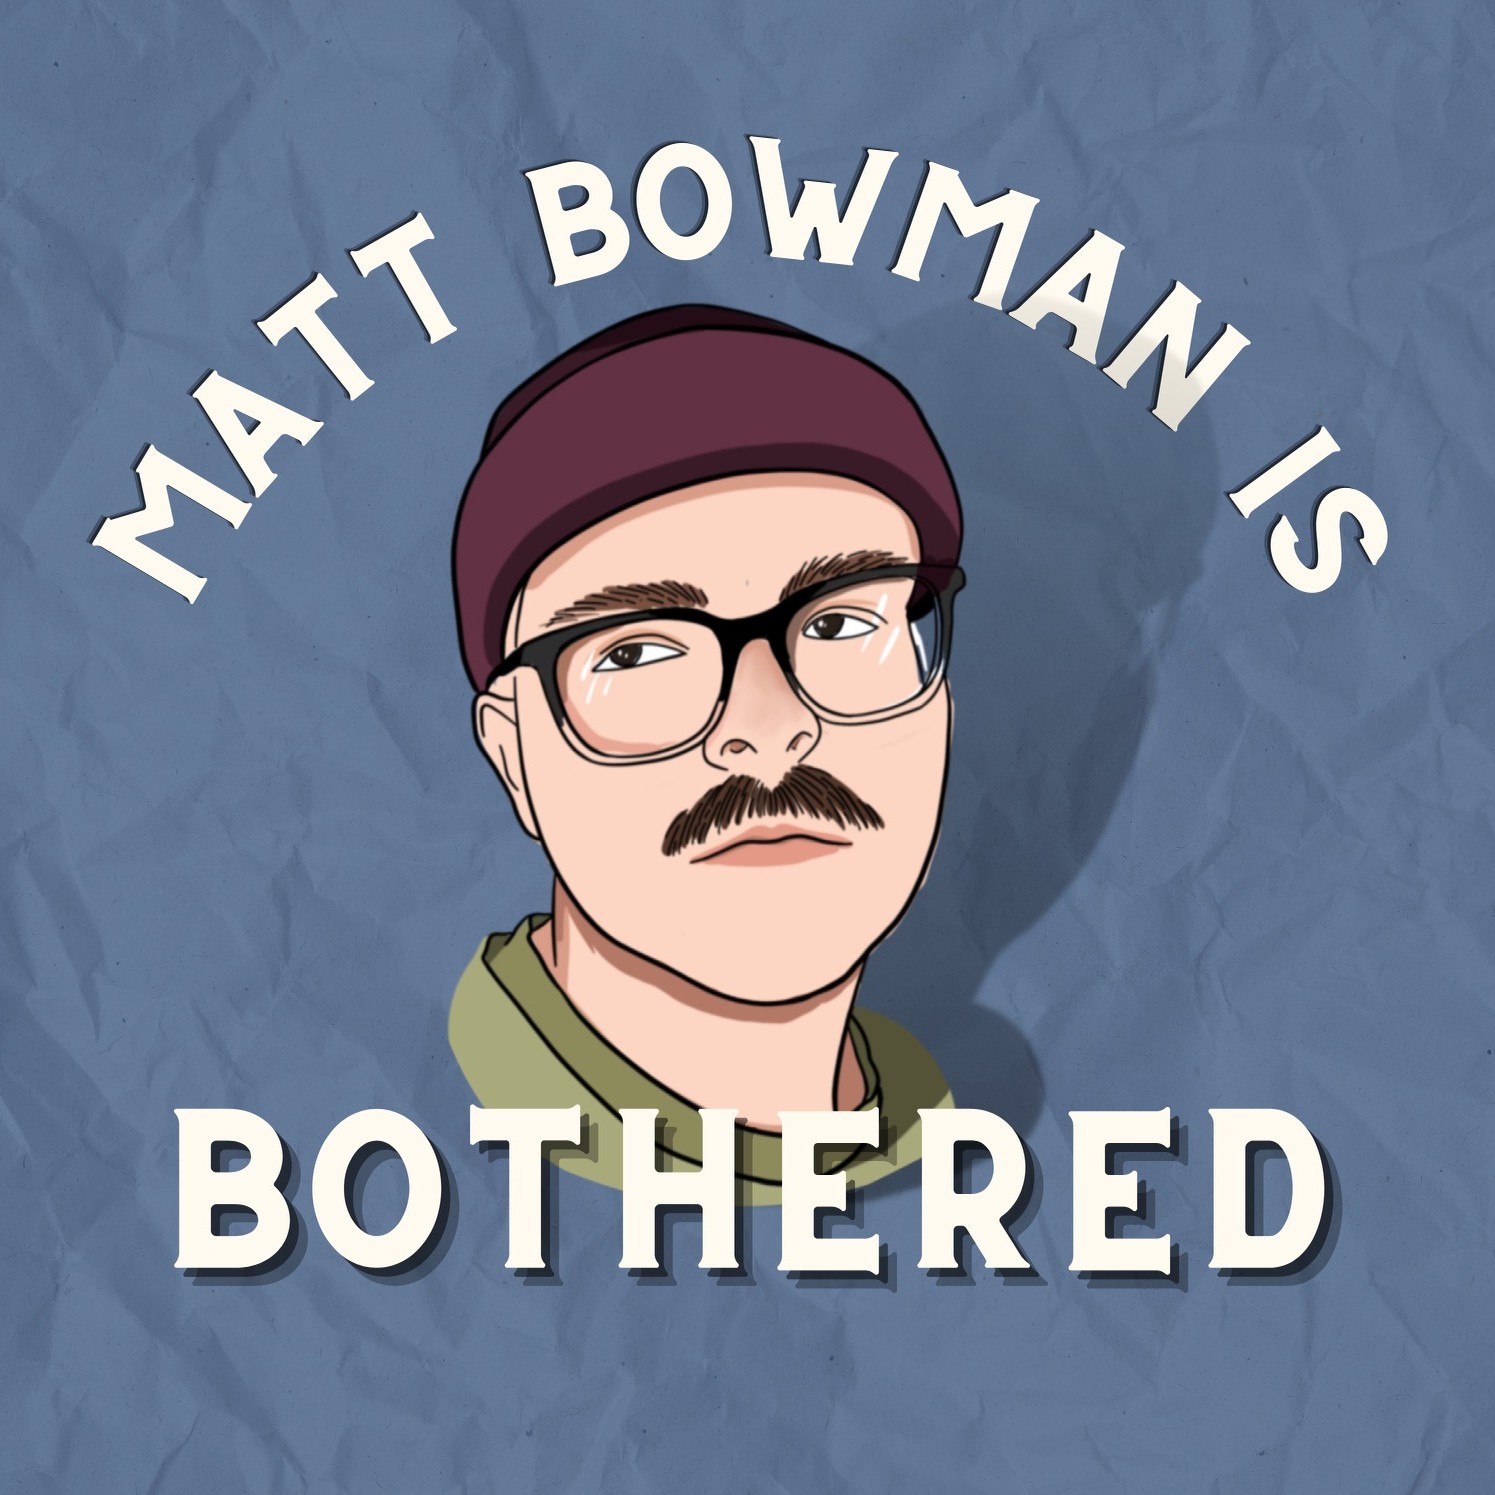 Matt Bowman Is Bothered